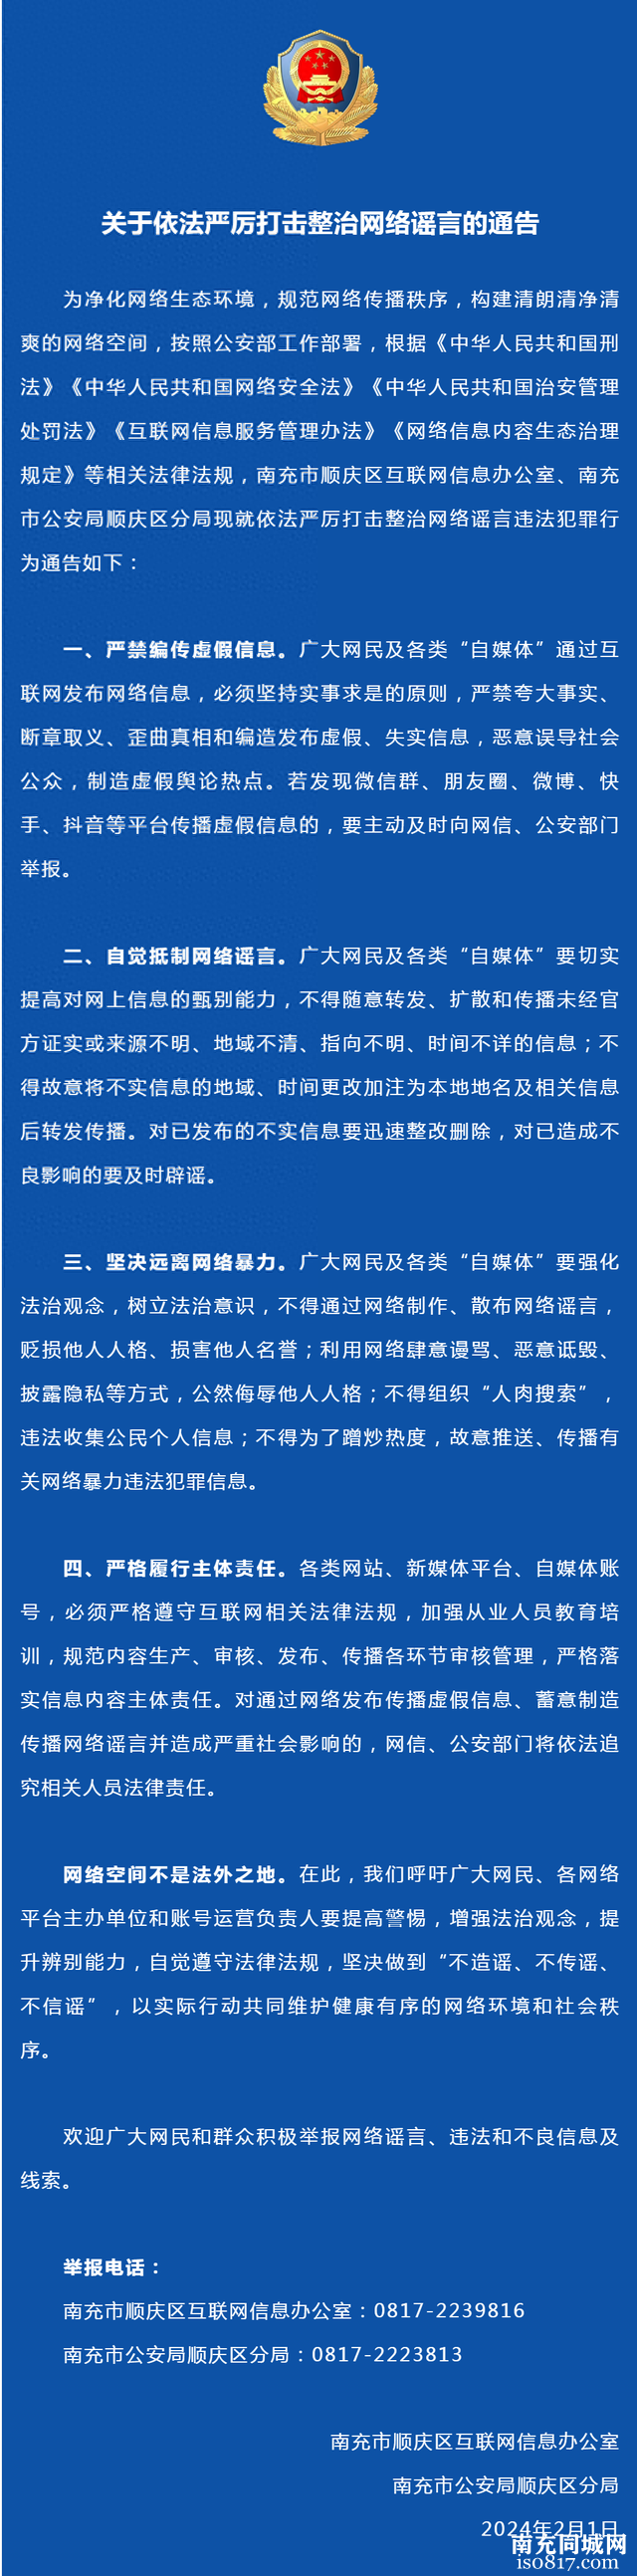 南充市顺庆区关于依法严厉打击整治网络谣言的通告-1.jpg